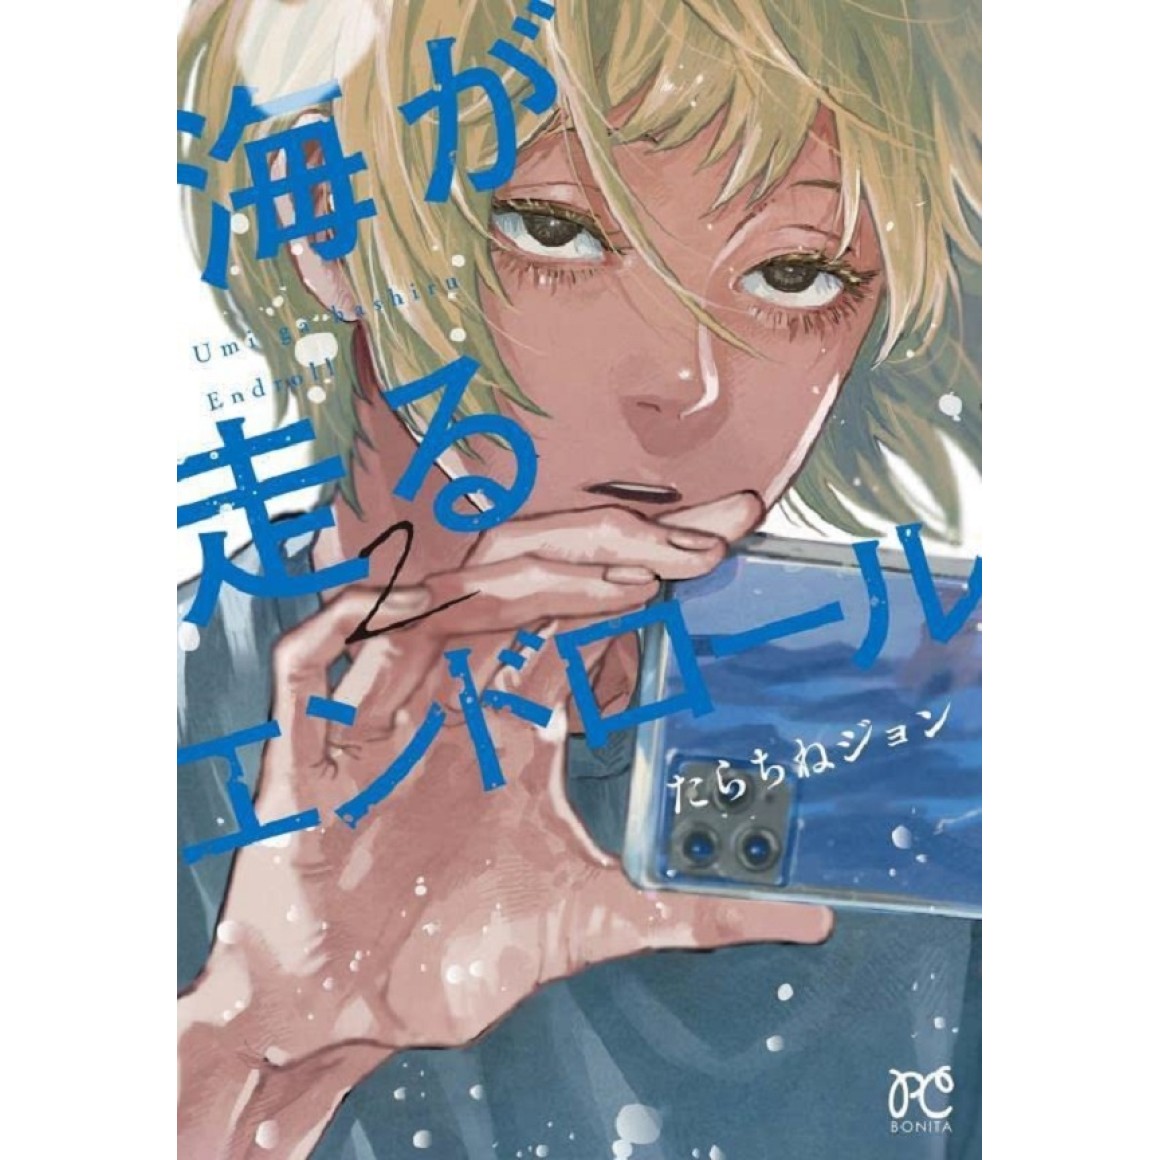 Blue Period (manga) - Wikipedia